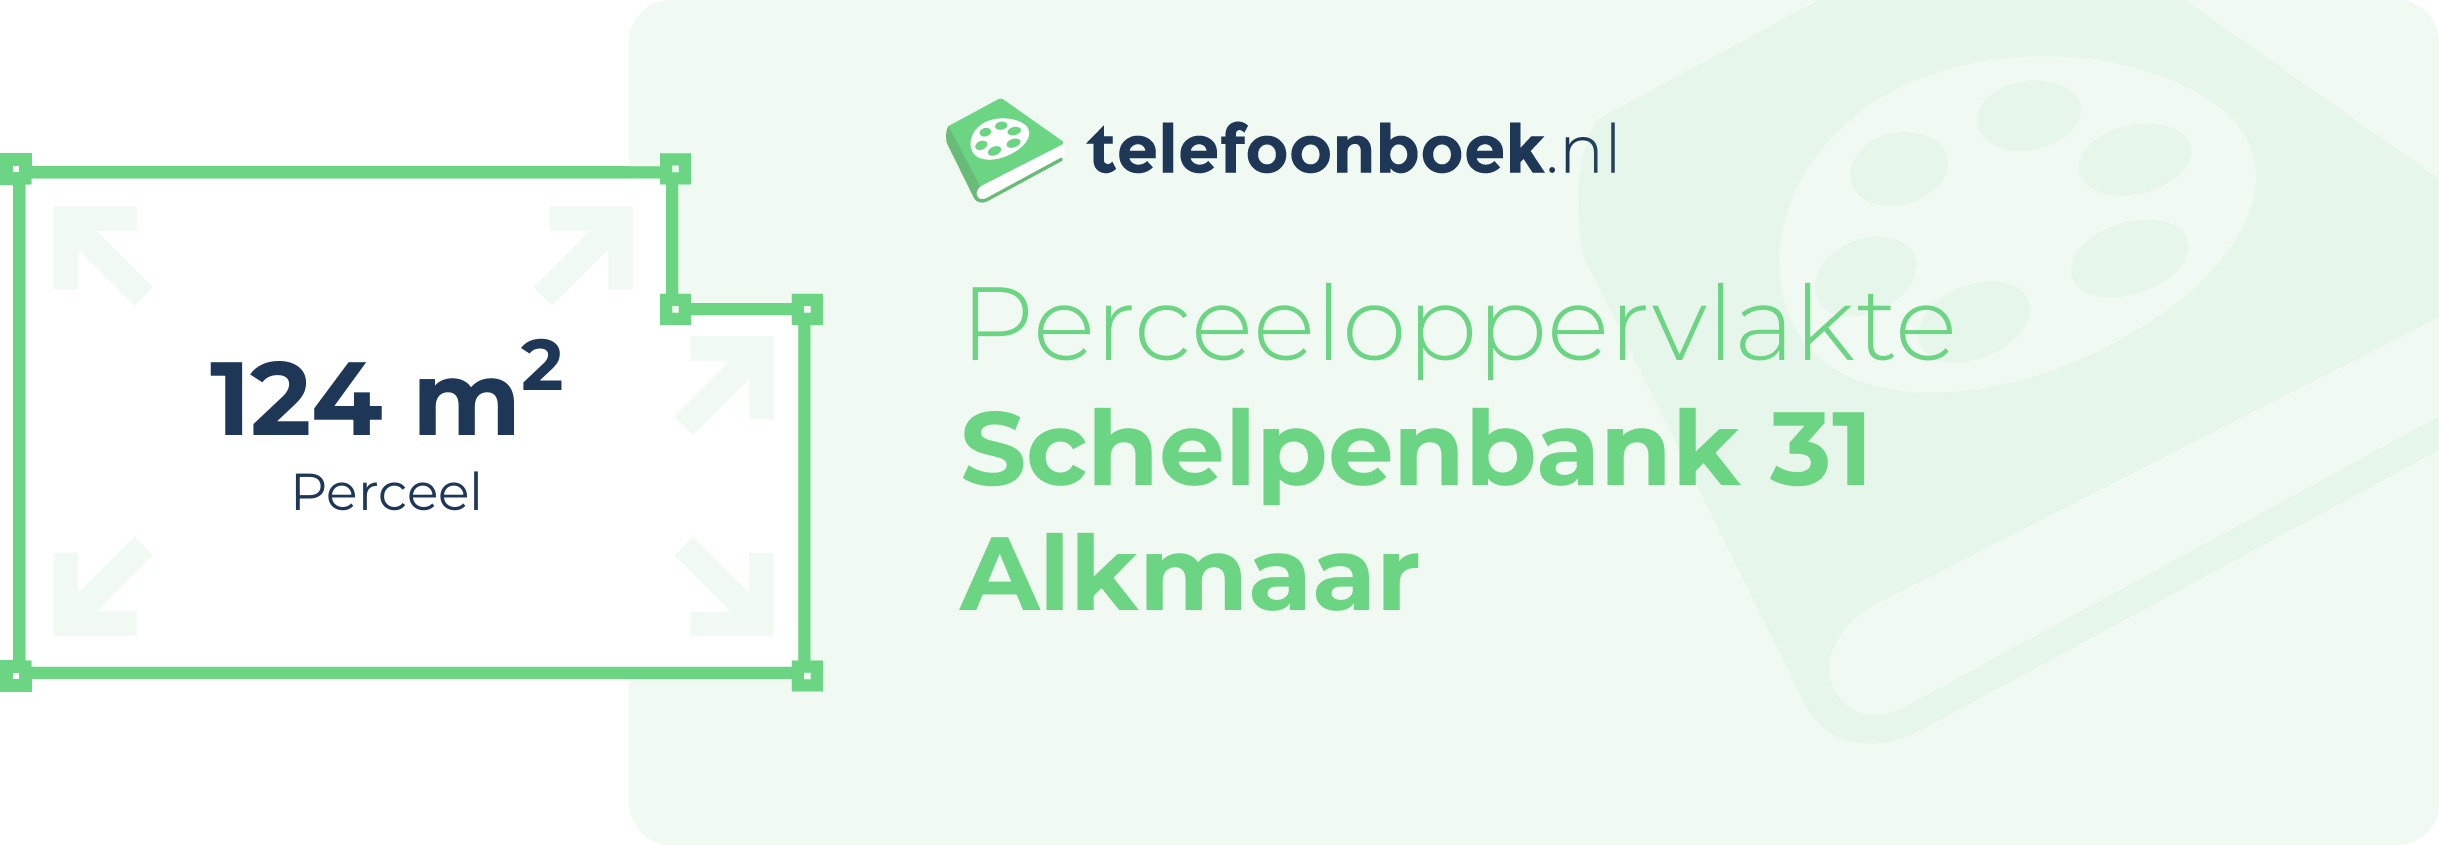 Perceeloppervlakte Schelpenbank 31 Alkmaar